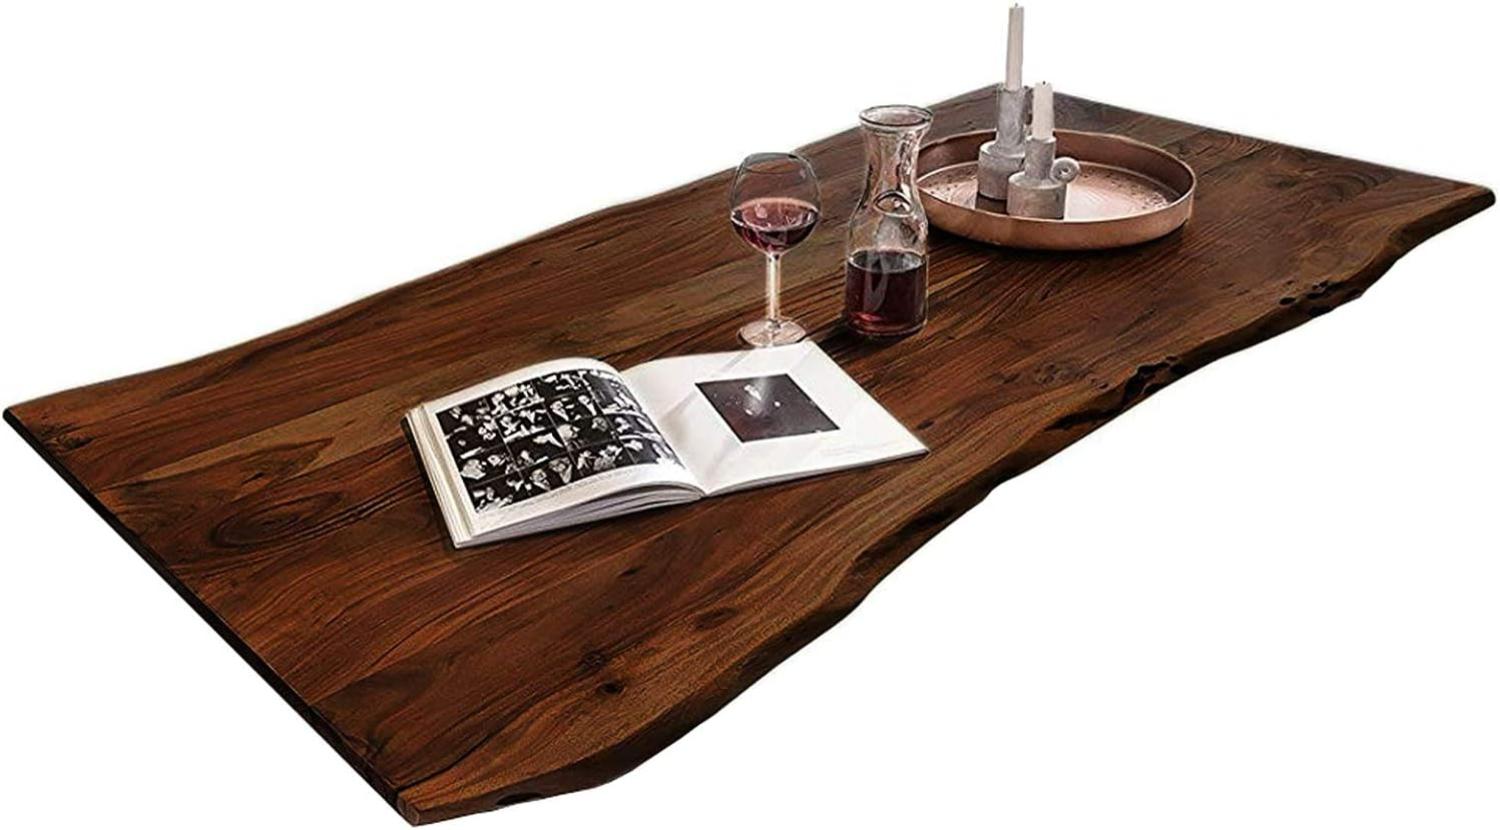 SAM Tischplatte 160x85 cm, Quintus, Akazie, nussbaumfarben, stilvolle Baumkanten-Platte, Unikat Bild 1